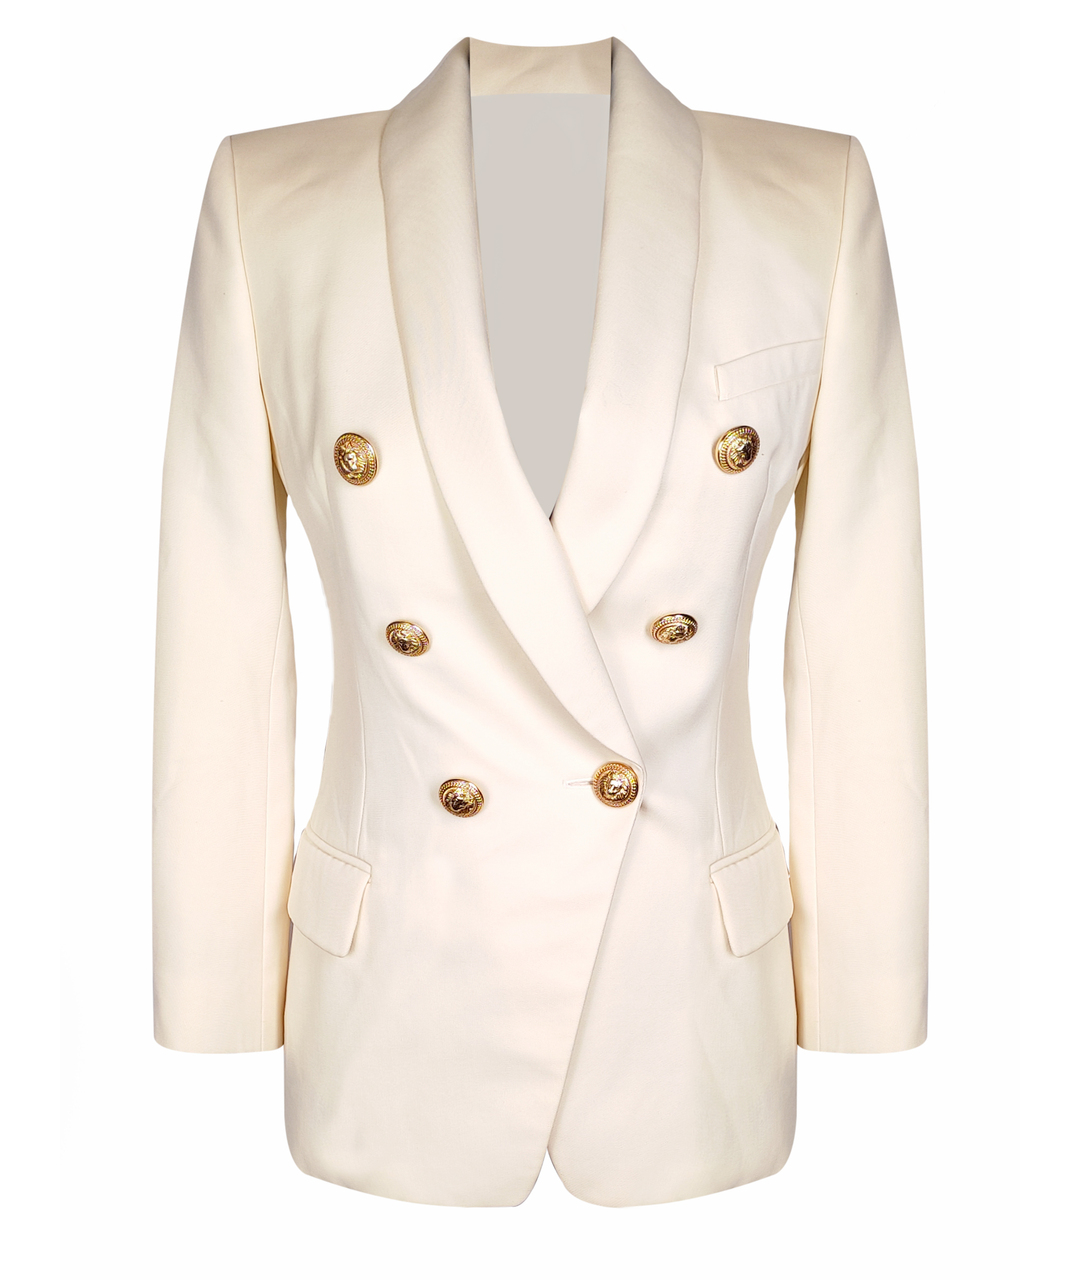 BALMAIN Белый жакет/пиджак, фото 1